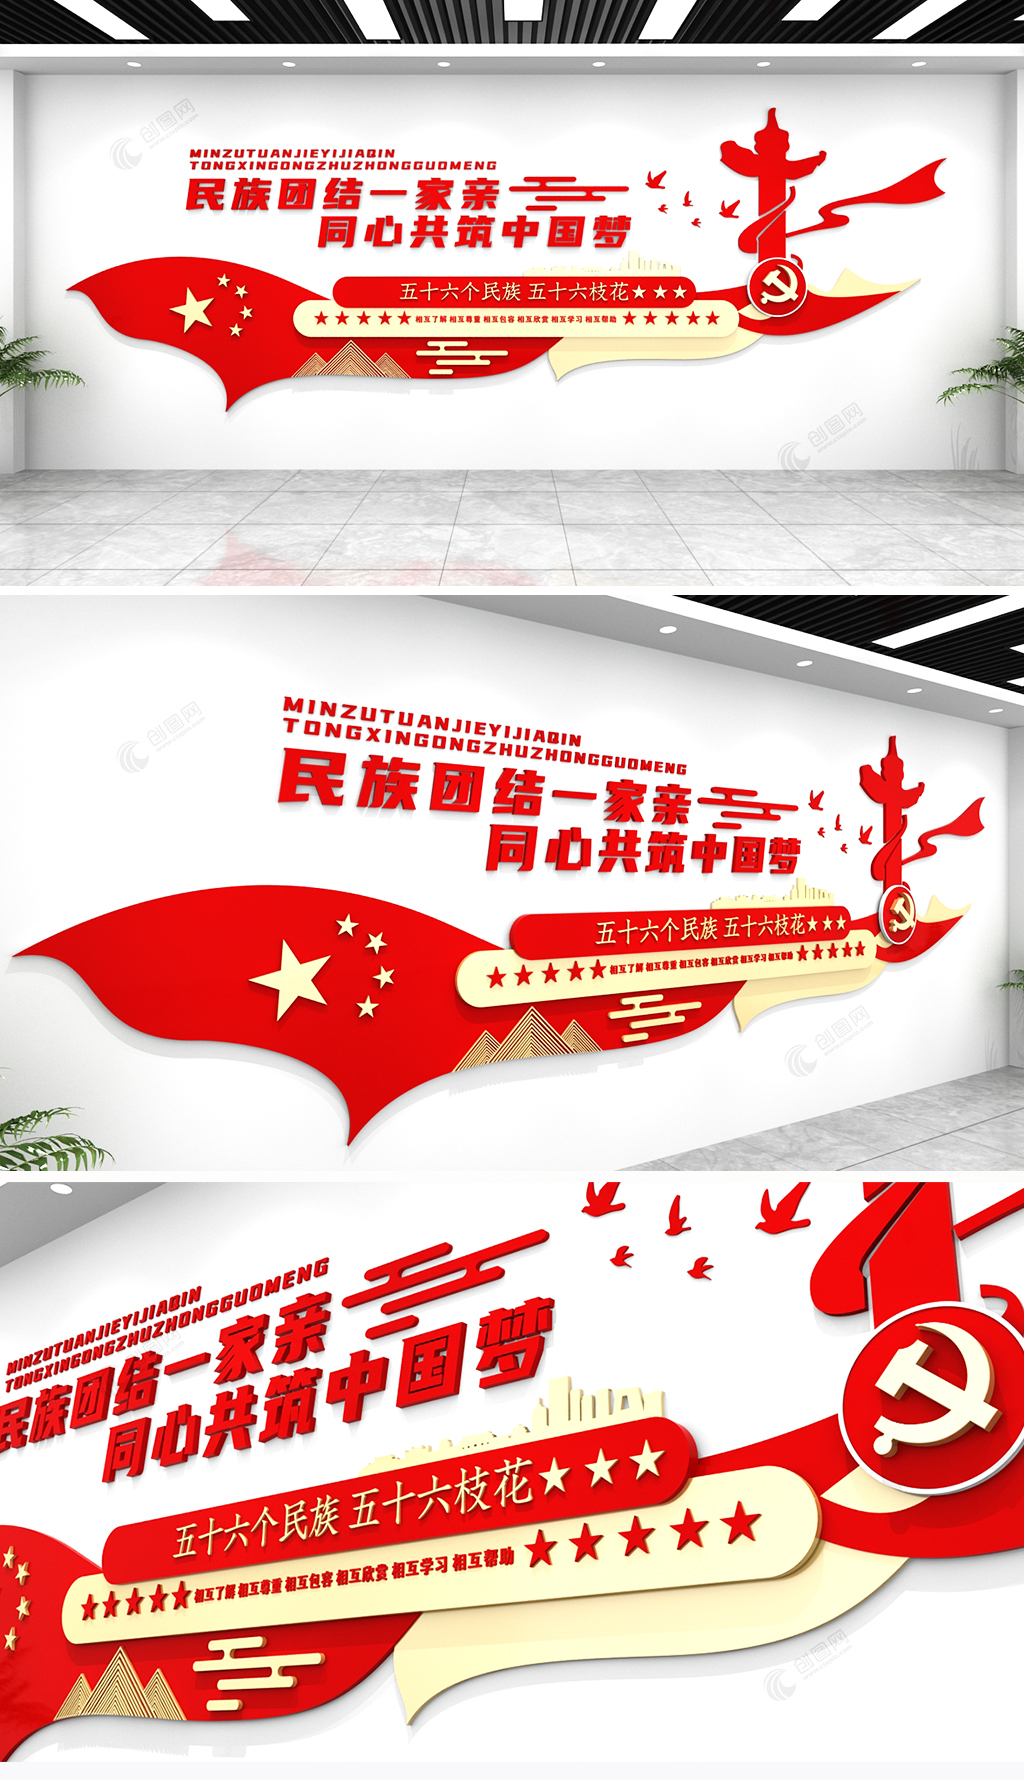 红色中国梦民族团结一家亲口号标语党建文化墙设计